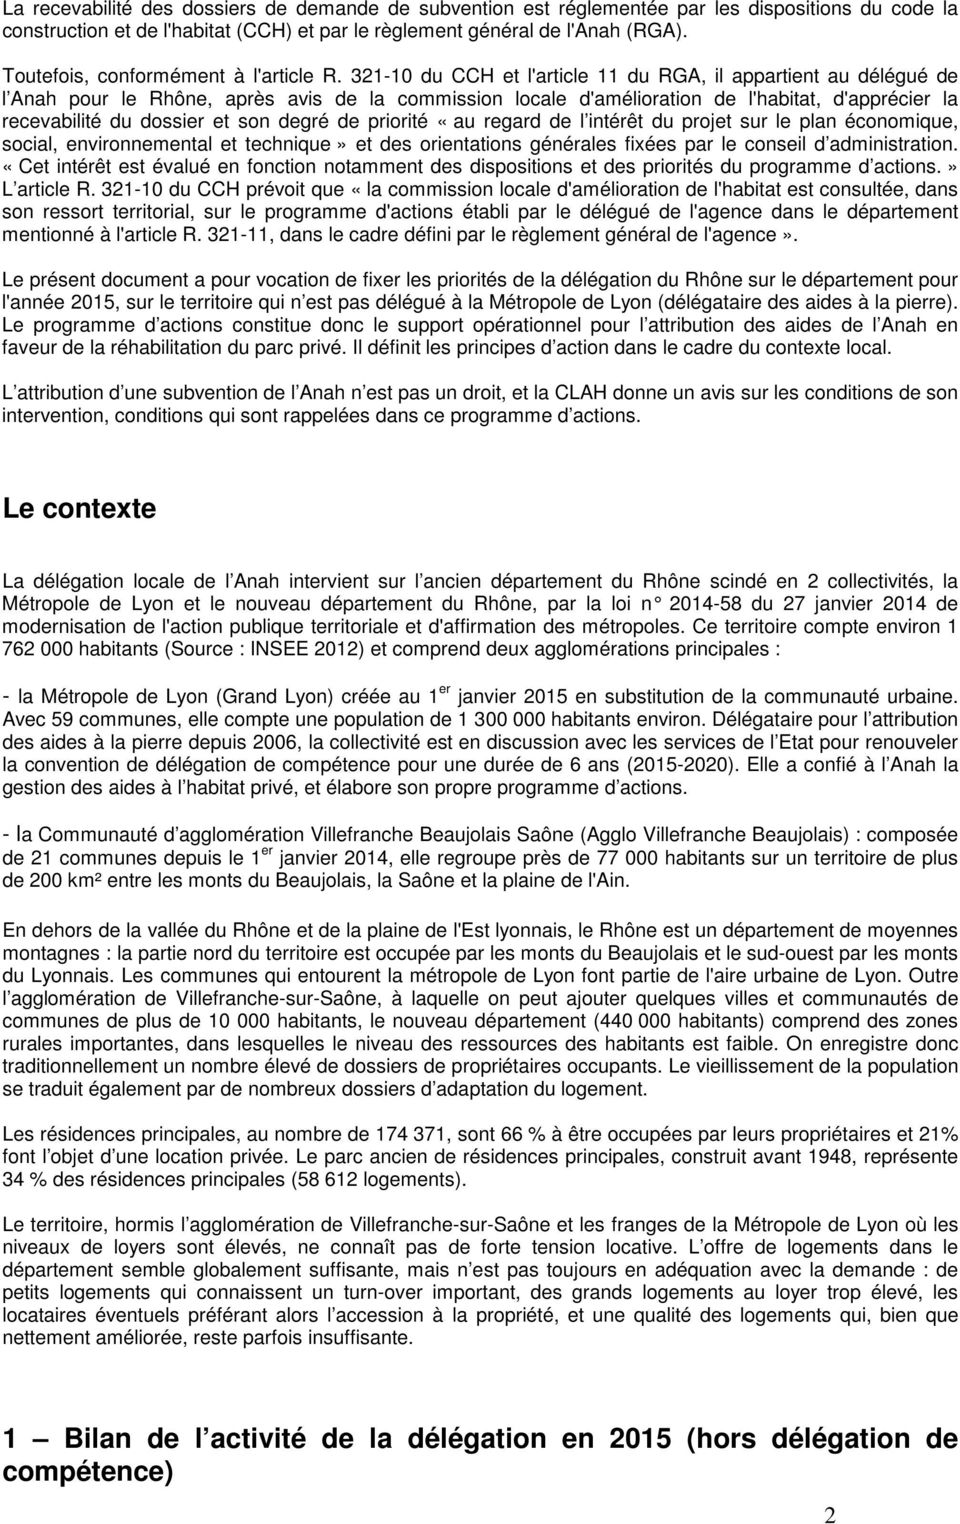 321-10 du CCH et l'article 11 du RGA, il appartient au délégué de l Anah pour le Rhône, après avis de la commission locale d'amélioration de l'habitat, d'apprécier la recevabilité du dossier et son